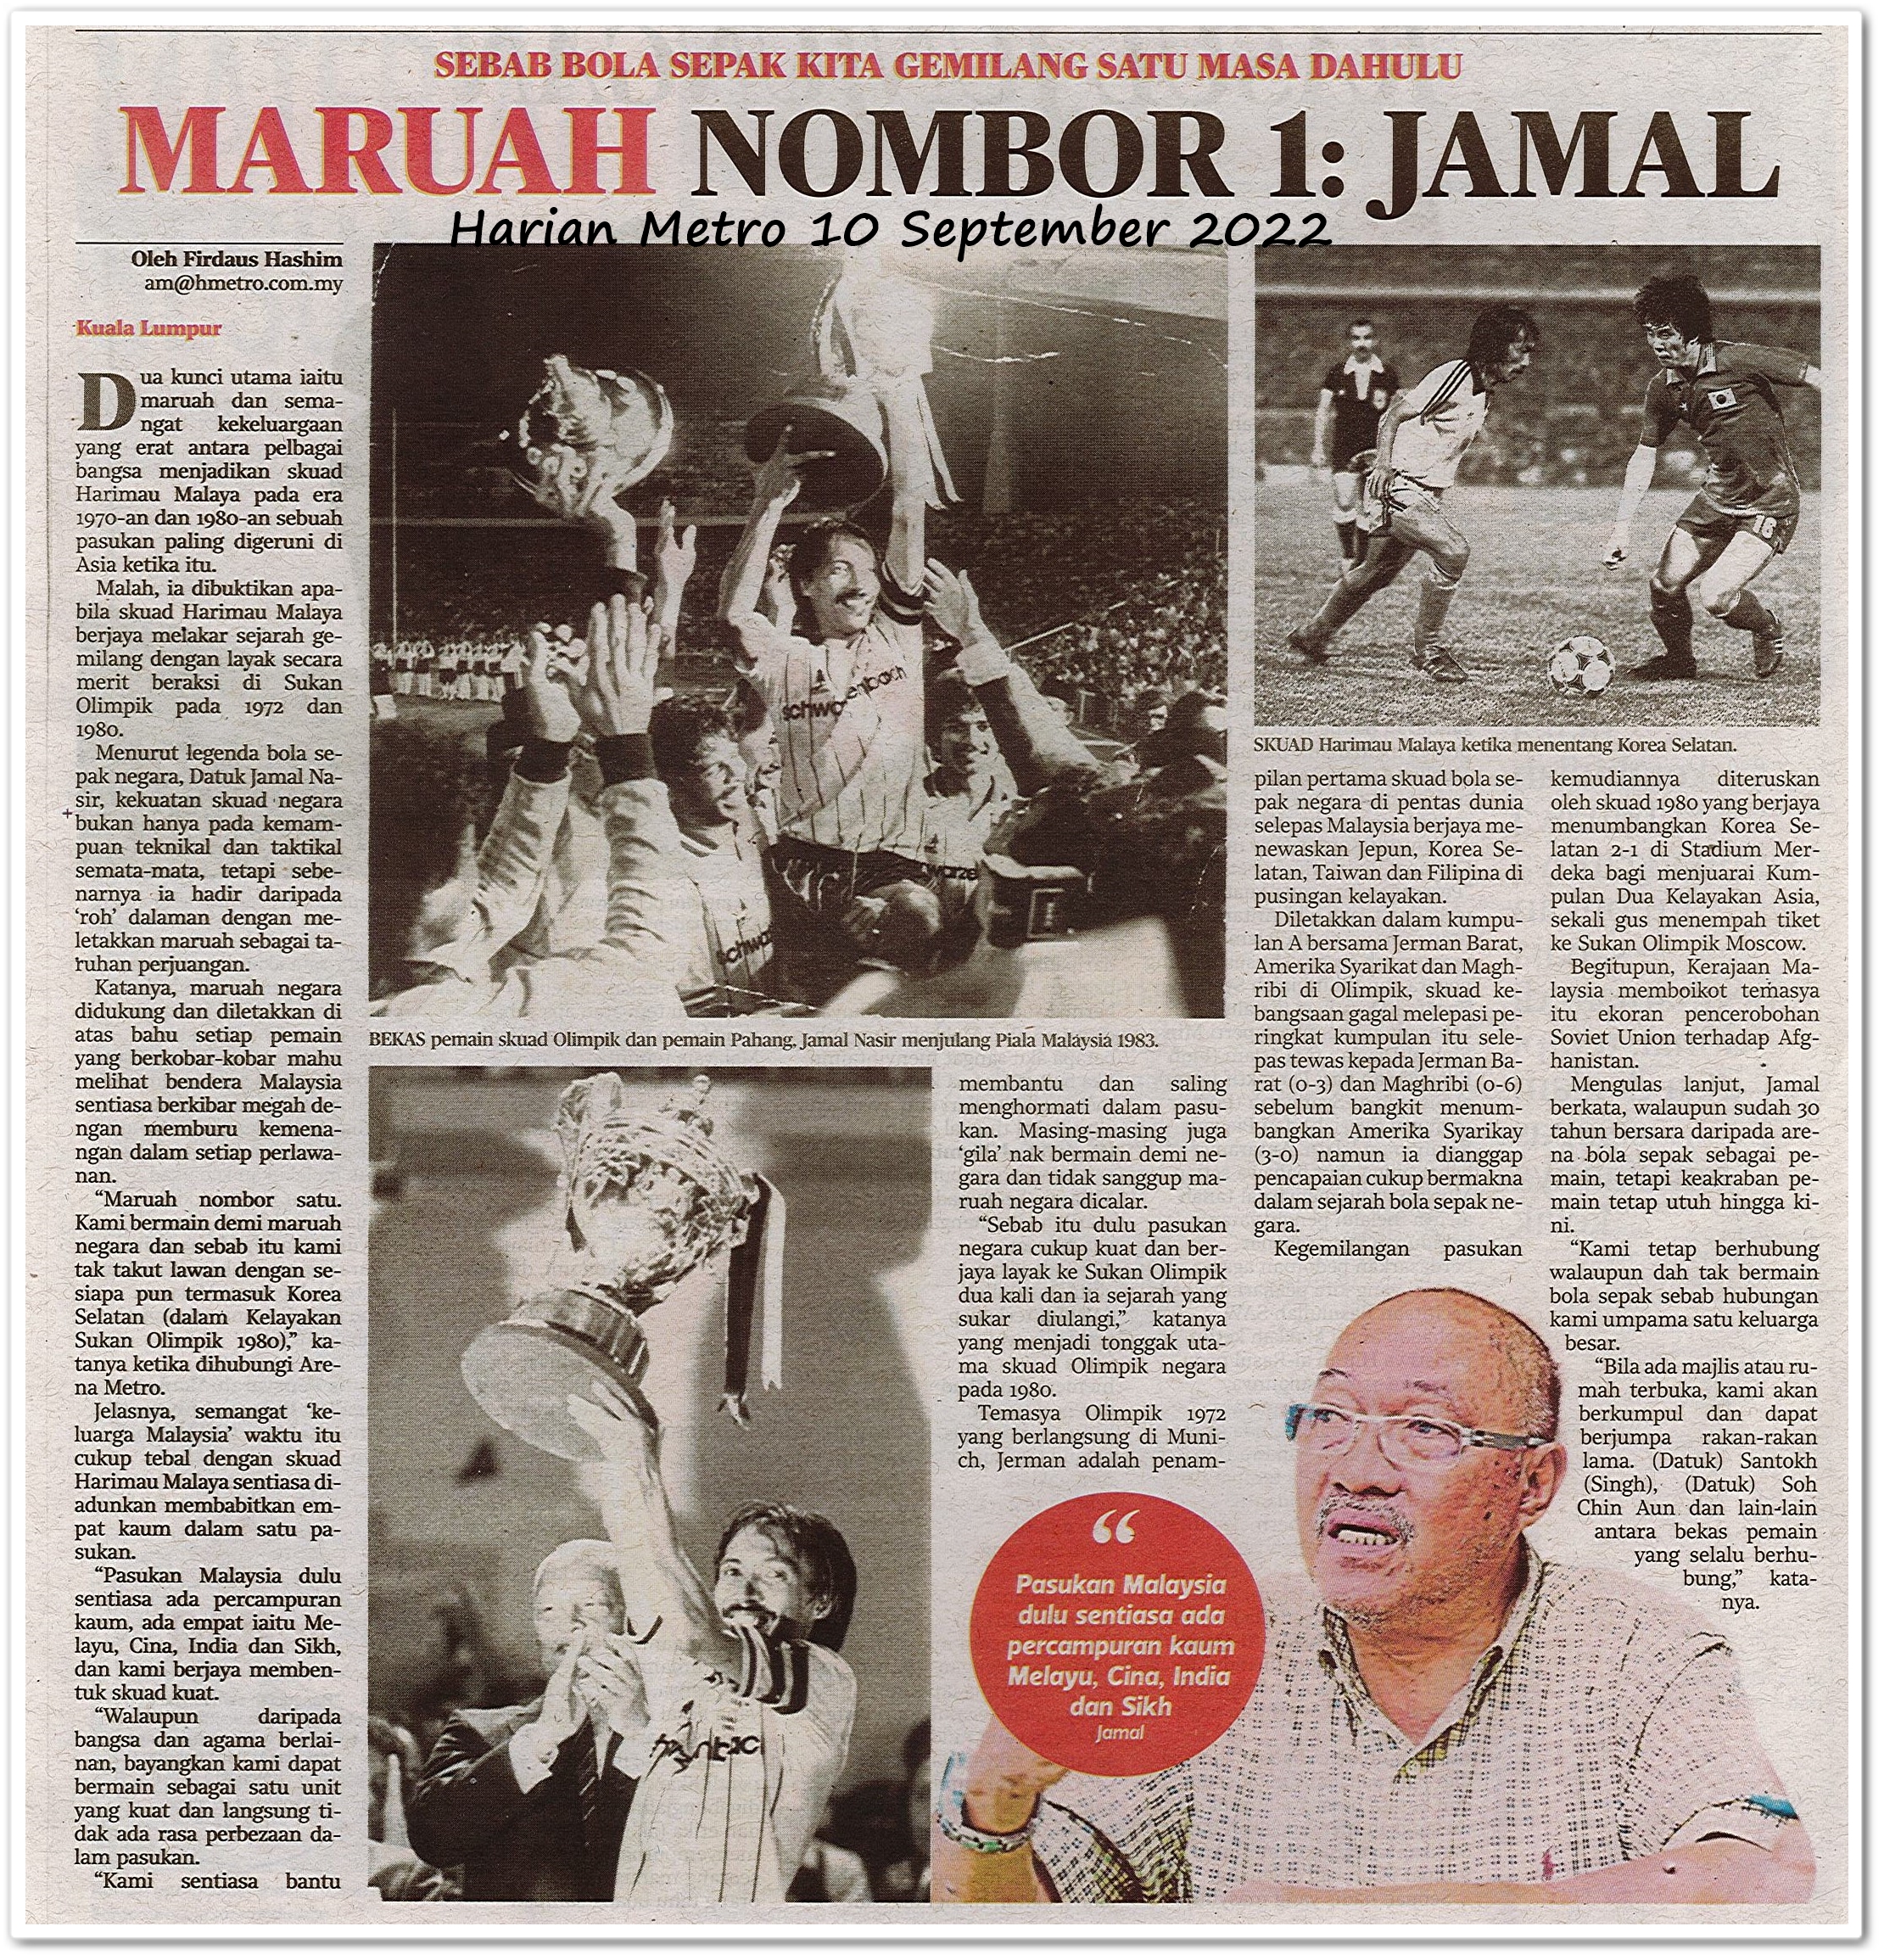 Maruah nombor 1 : Jamal ; Sebab bola sepak kita gemilang satu masa dahulu - Keratan akhbar Harian Metro 10 September 2022